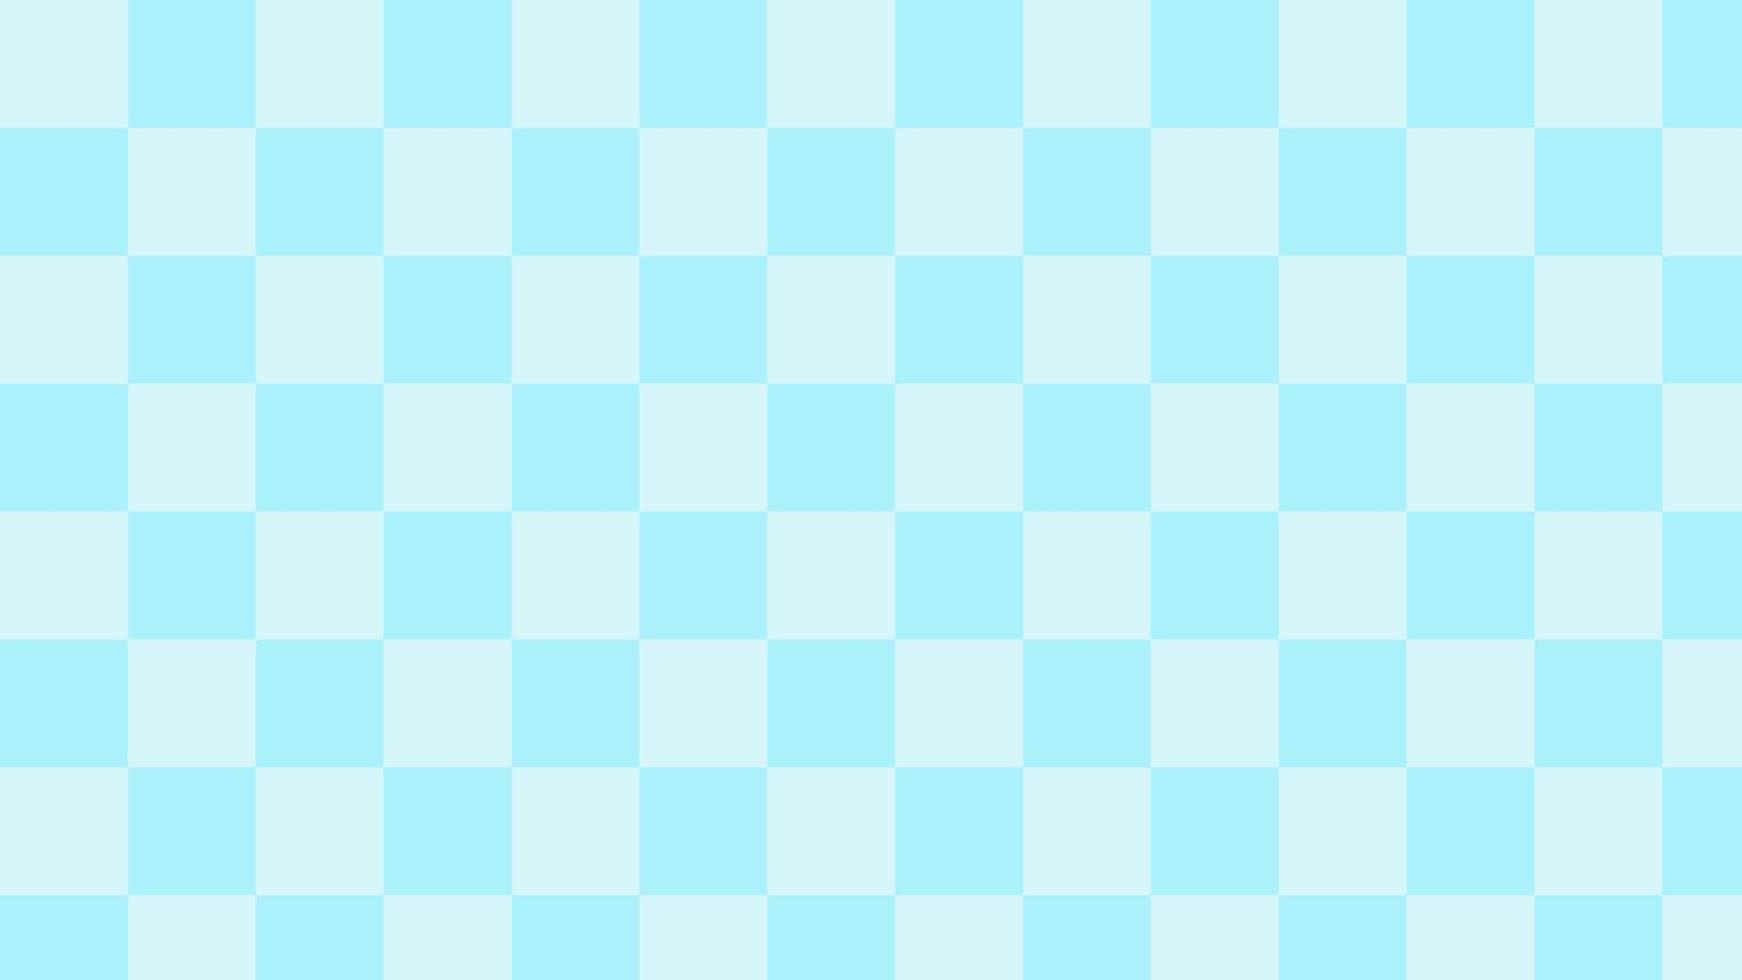 Thiết kế pastel xanh checkered mang đến cảm giác thanh lịch và lịch sự, đồng thời tạo nên vẻ đẹp tươi mới cho không gian làm việc hoặc giải trí của bạn. Xem và tải xuống ngay để sử dụng cho các mục đích của bạn.